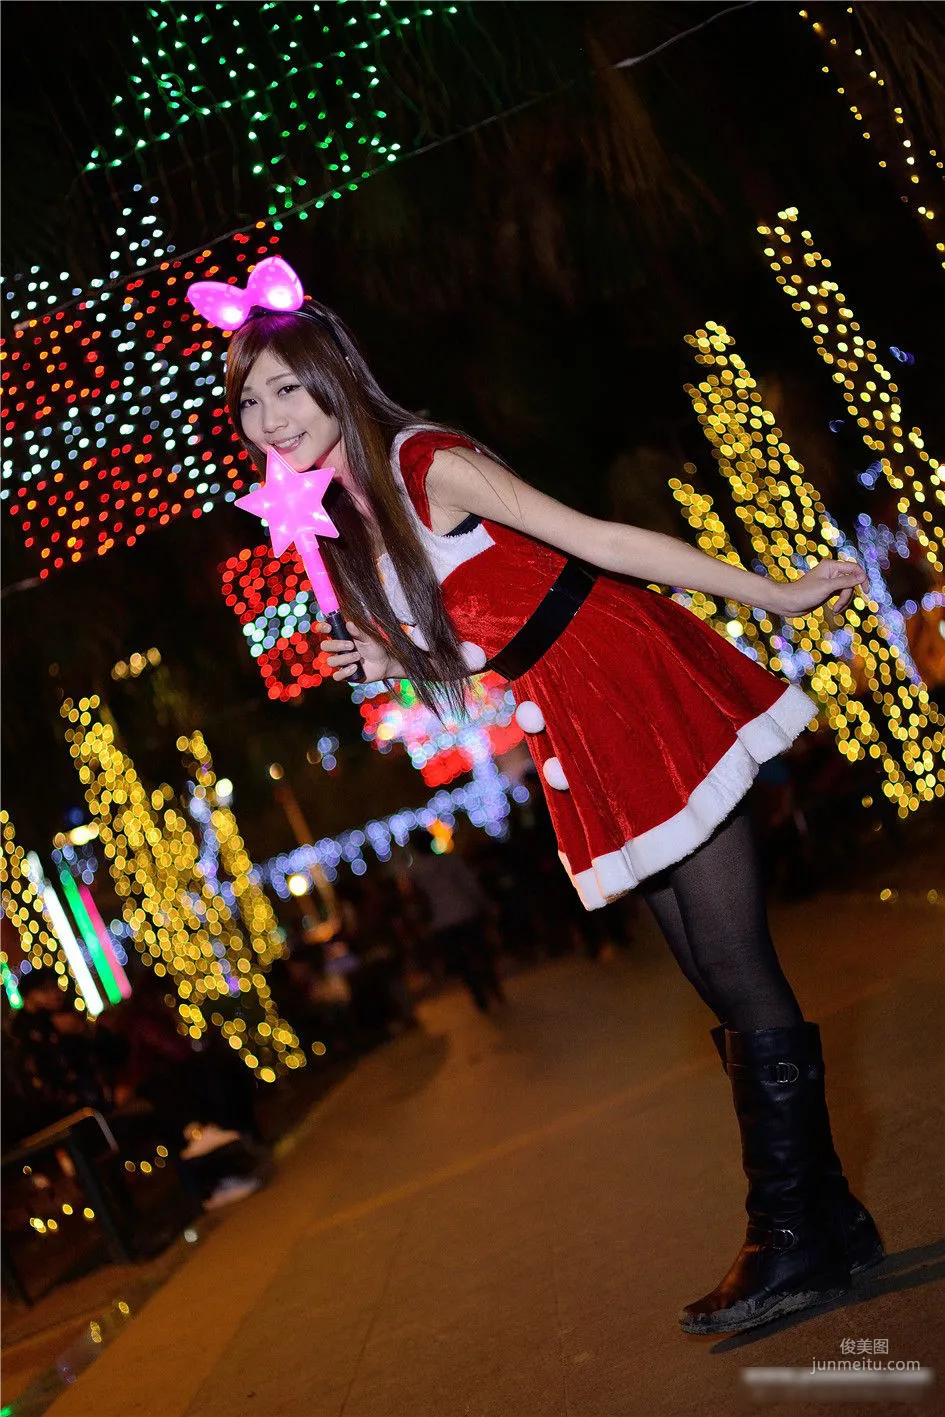 [台湾女神] 张雅筑chu 《板橋車站圣诞节外拍》 写真集7